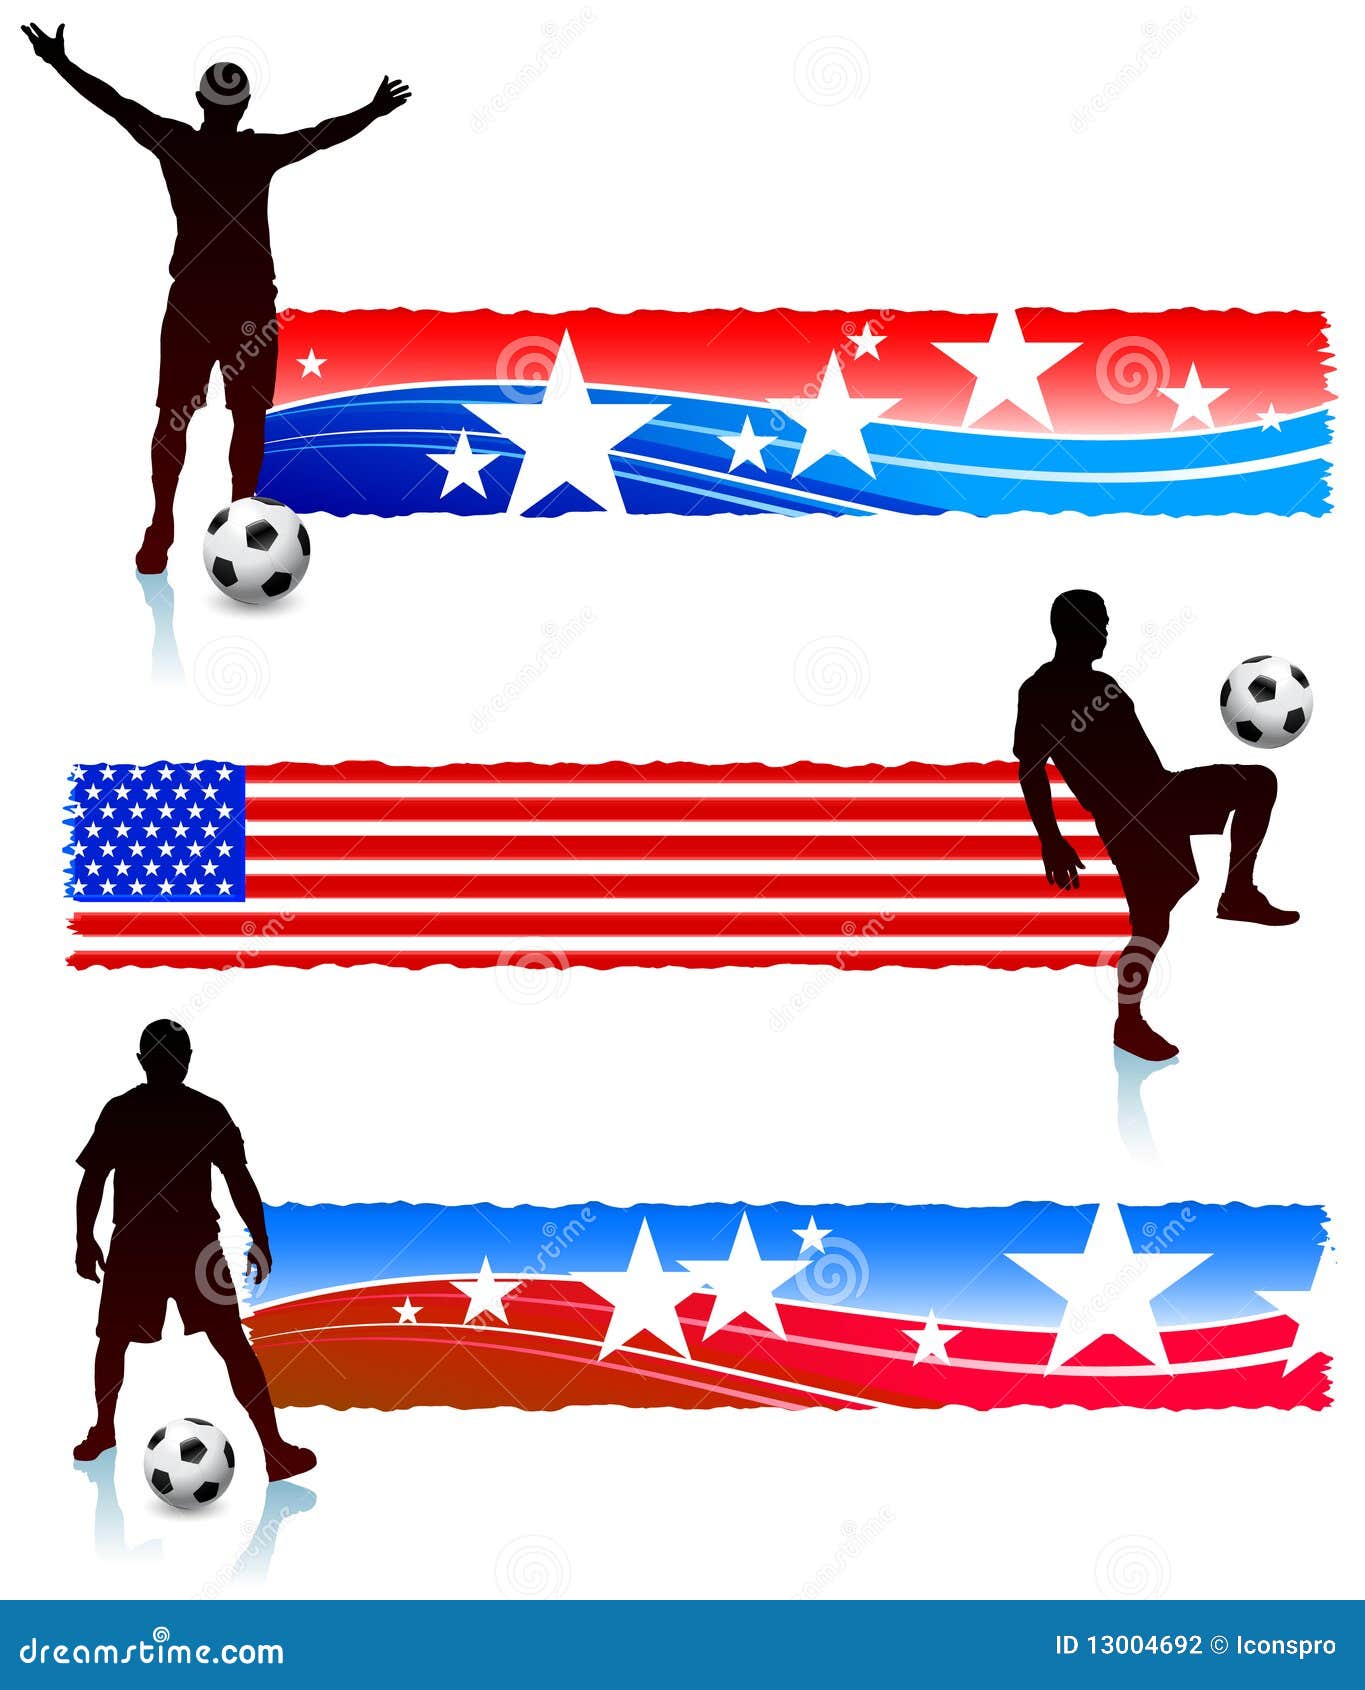 Soccer as a patriotism expression